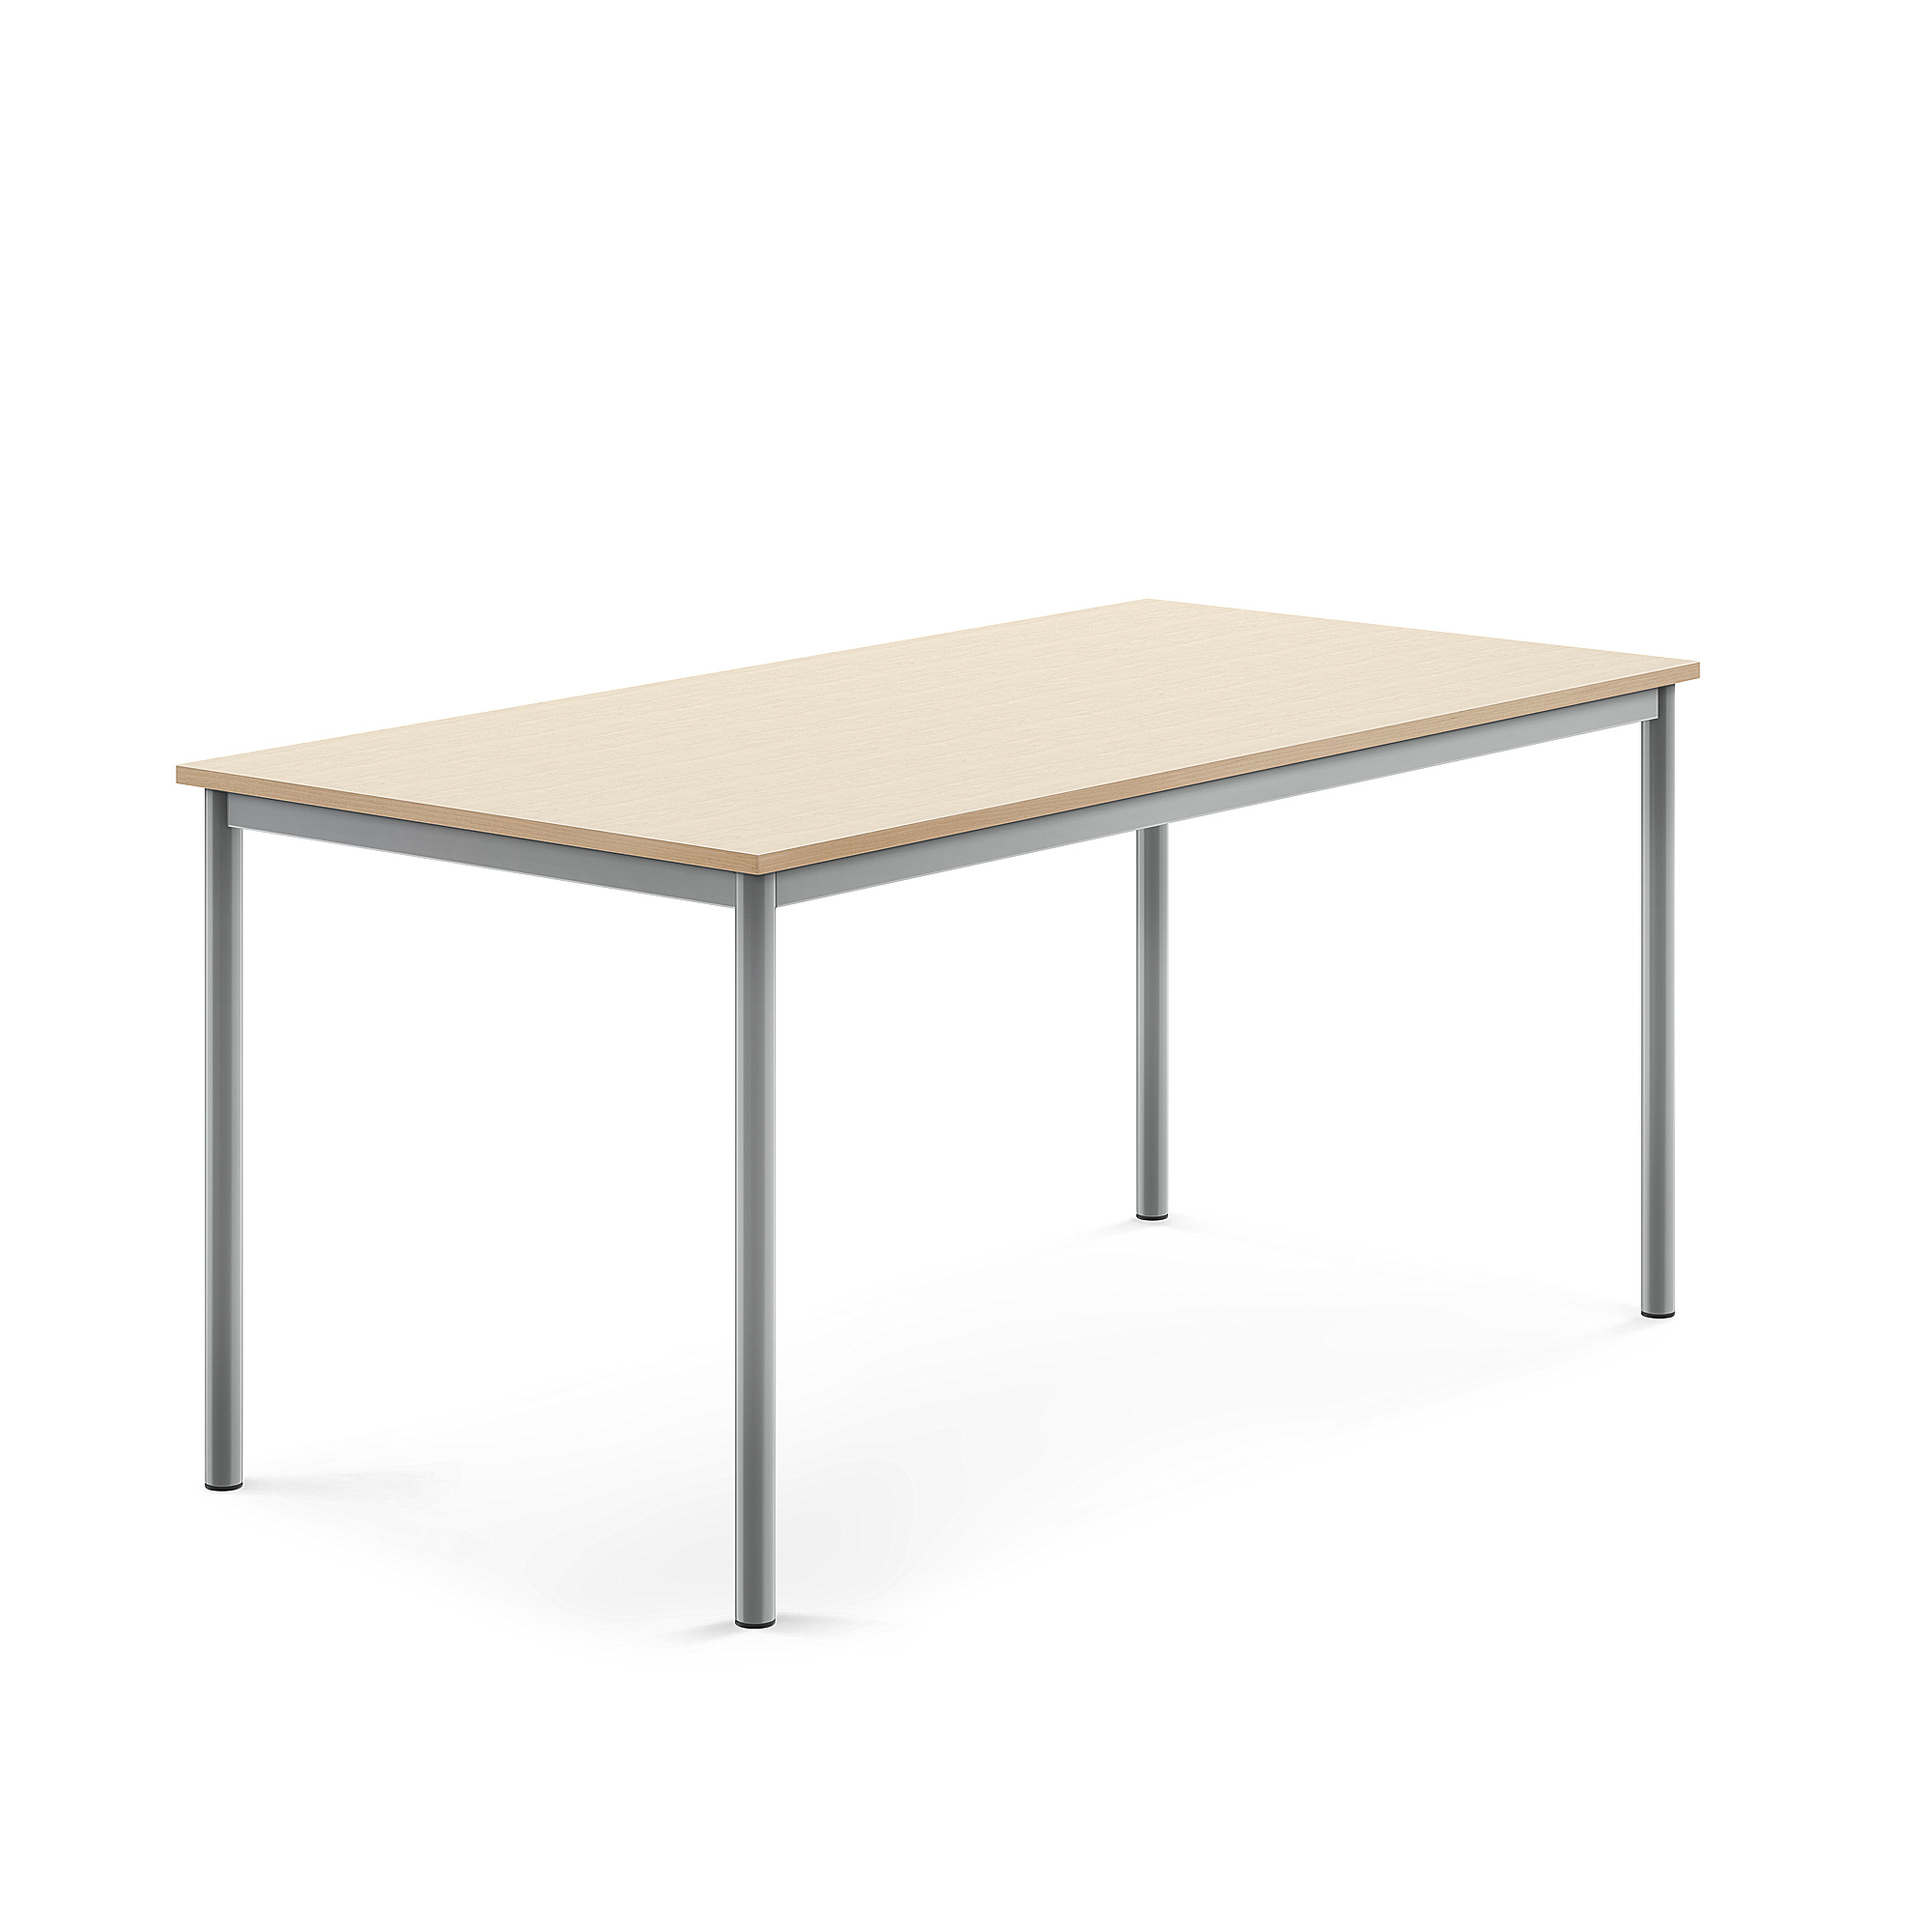 Stůl BORÅS, 1600x800x720 mm, stříbrné nohy, HPL deska, bříza